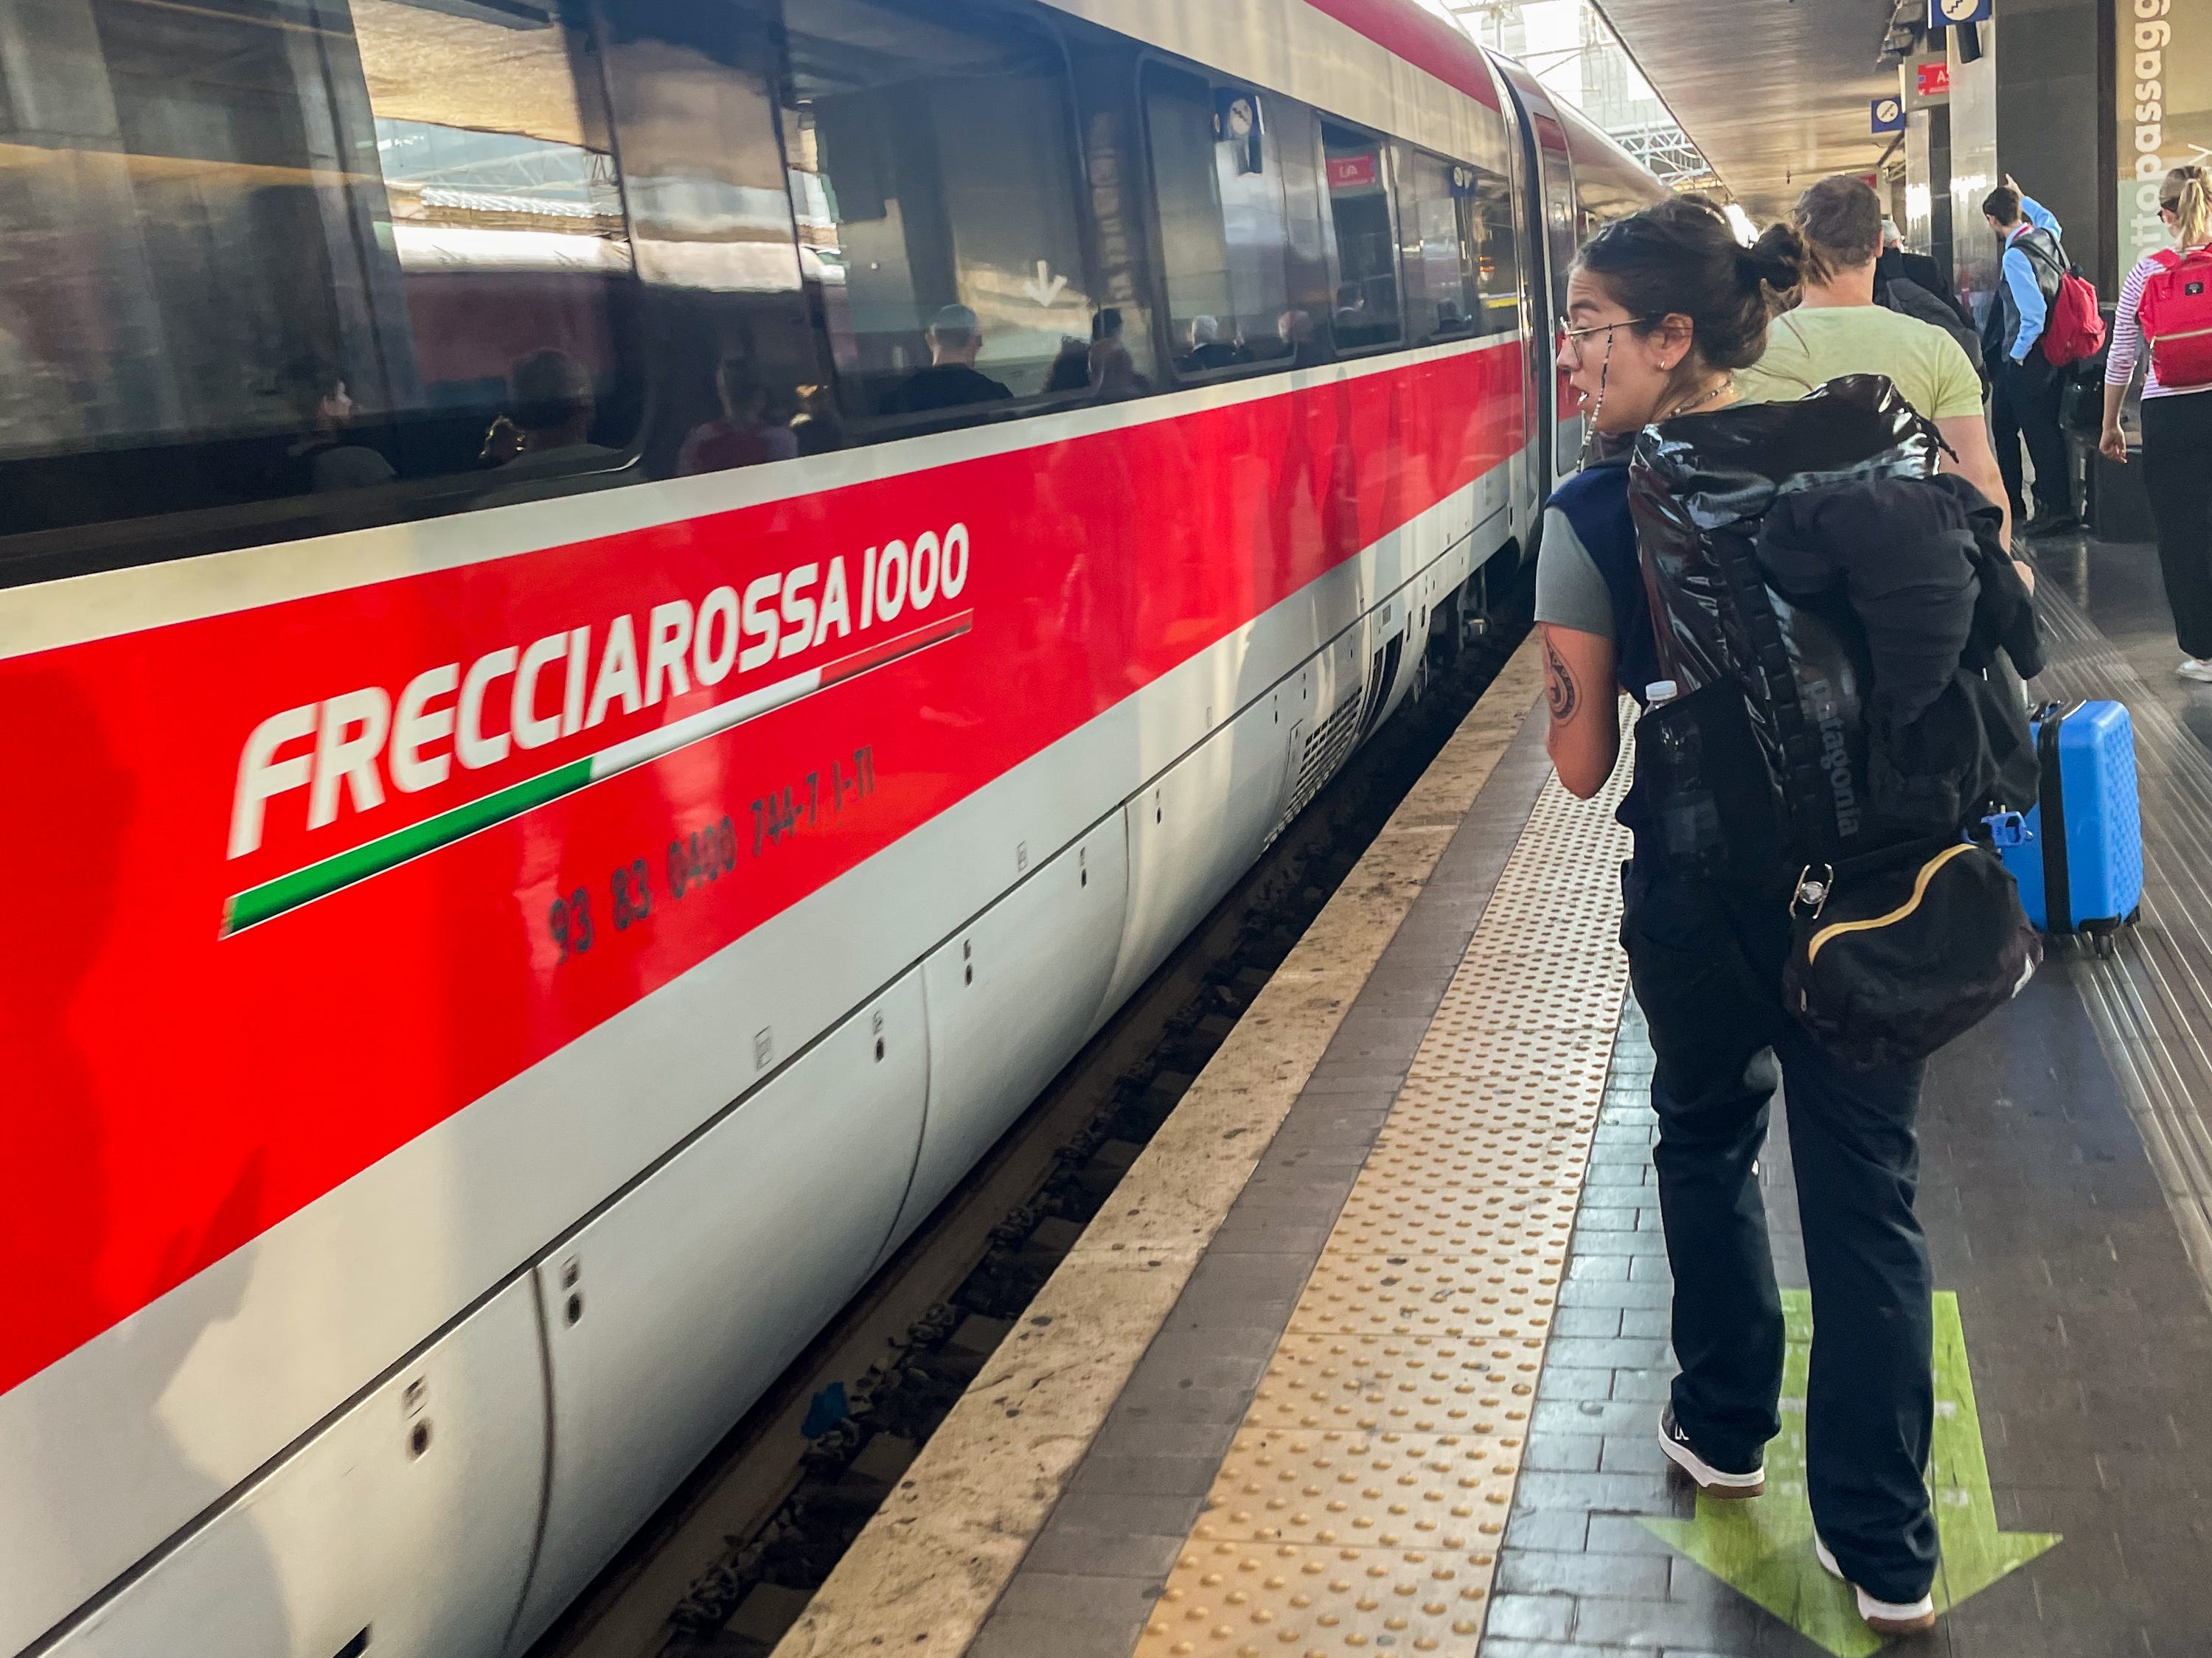 Der Autor bereitet sich darauf vor, in einem Frecciarossa-Zug in Italien in ein Business-Class-Auto einzusteigen.